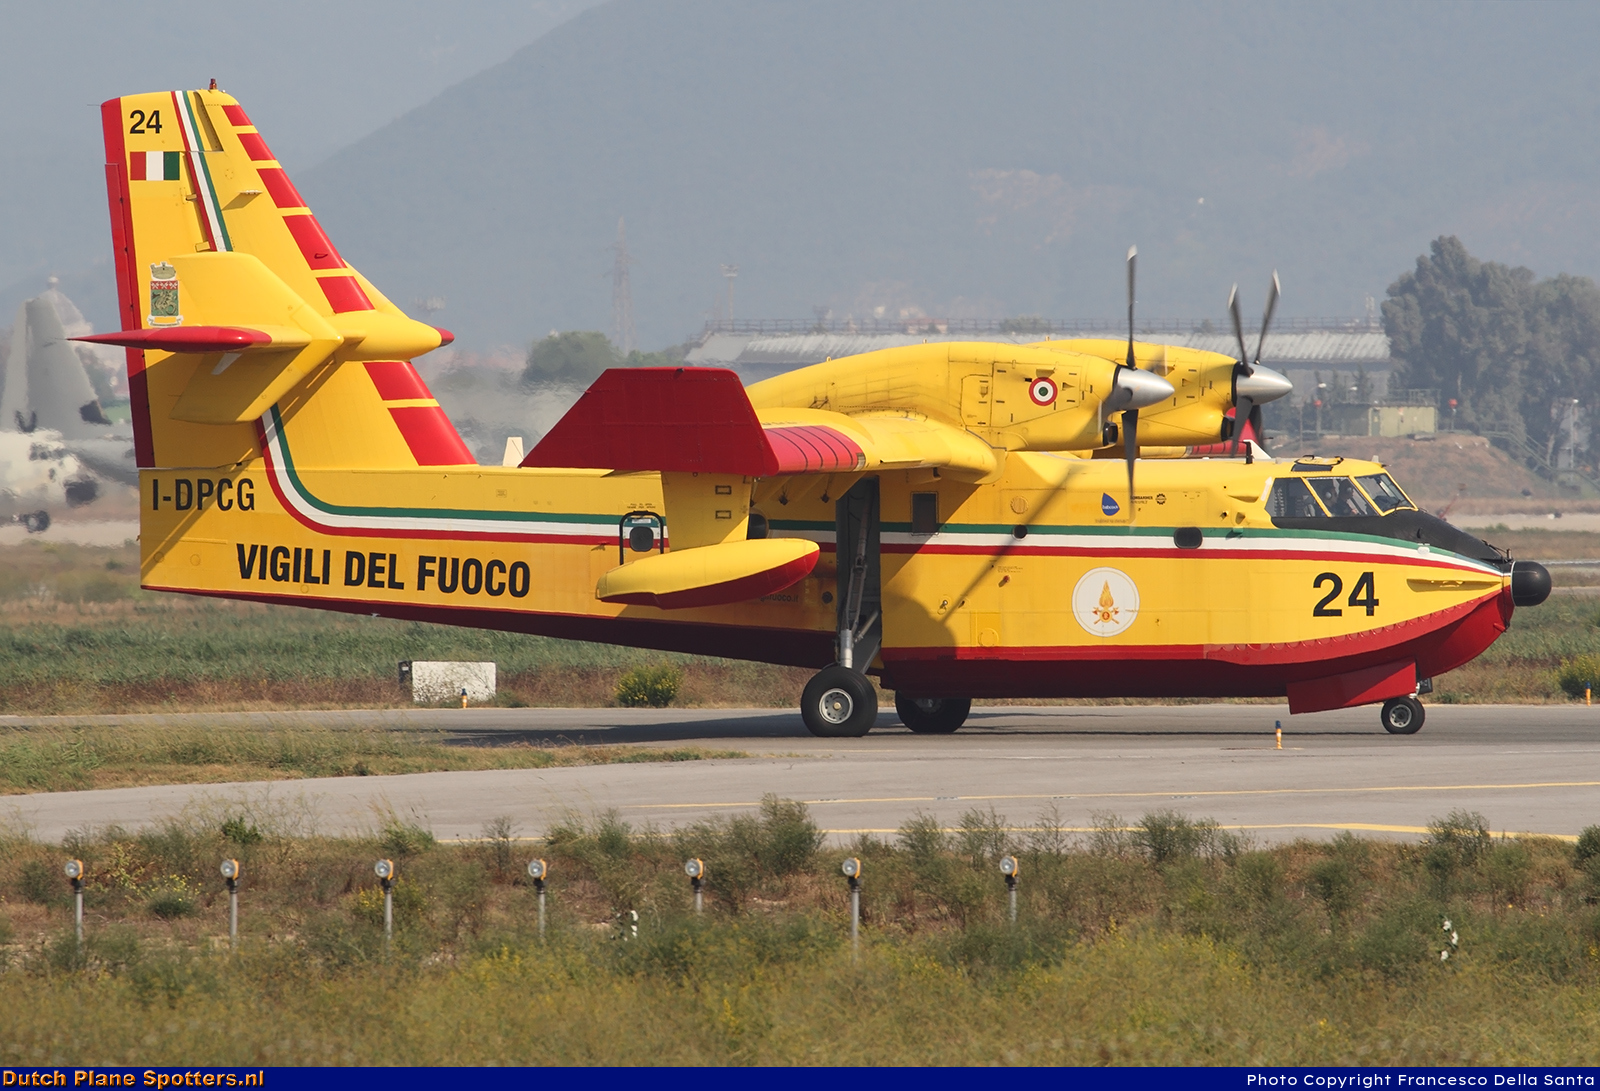 I-DPCG Canadair CL-415 Vigili del Fuoco by Francesco Della Santa